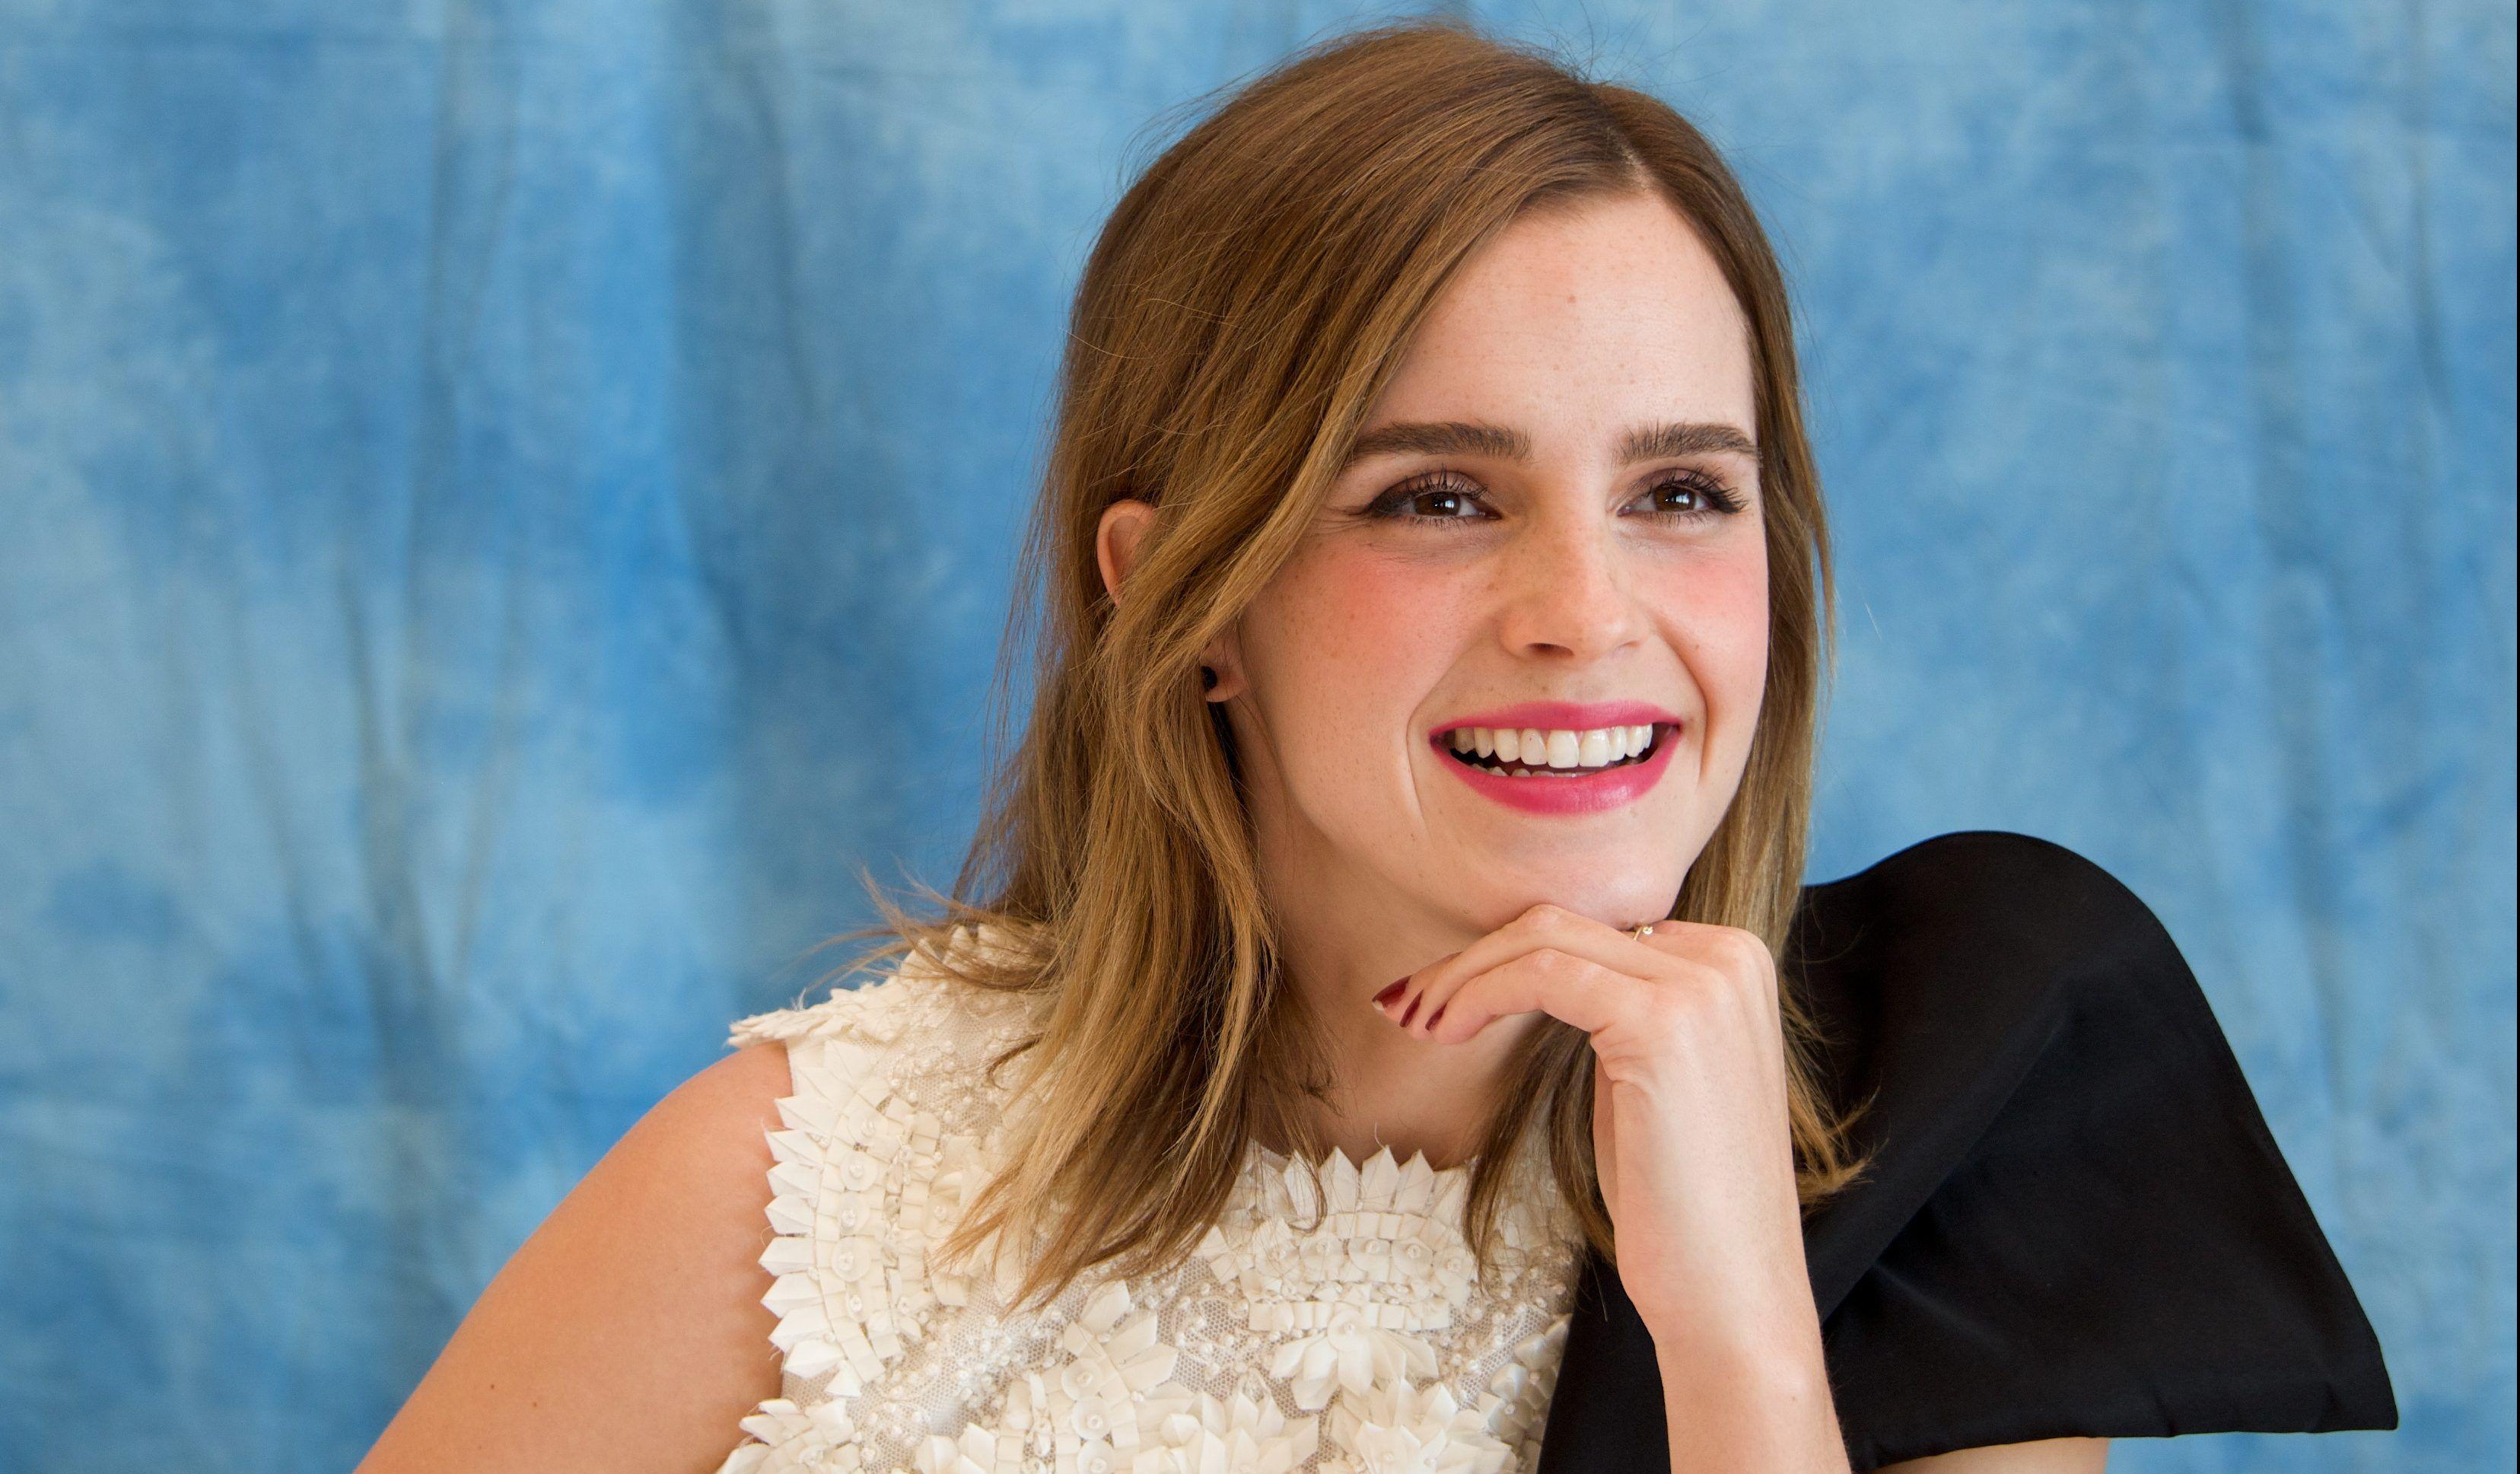 Emma Watson Cute Smile, HD Celebrities, 4k Wallpaper, Image